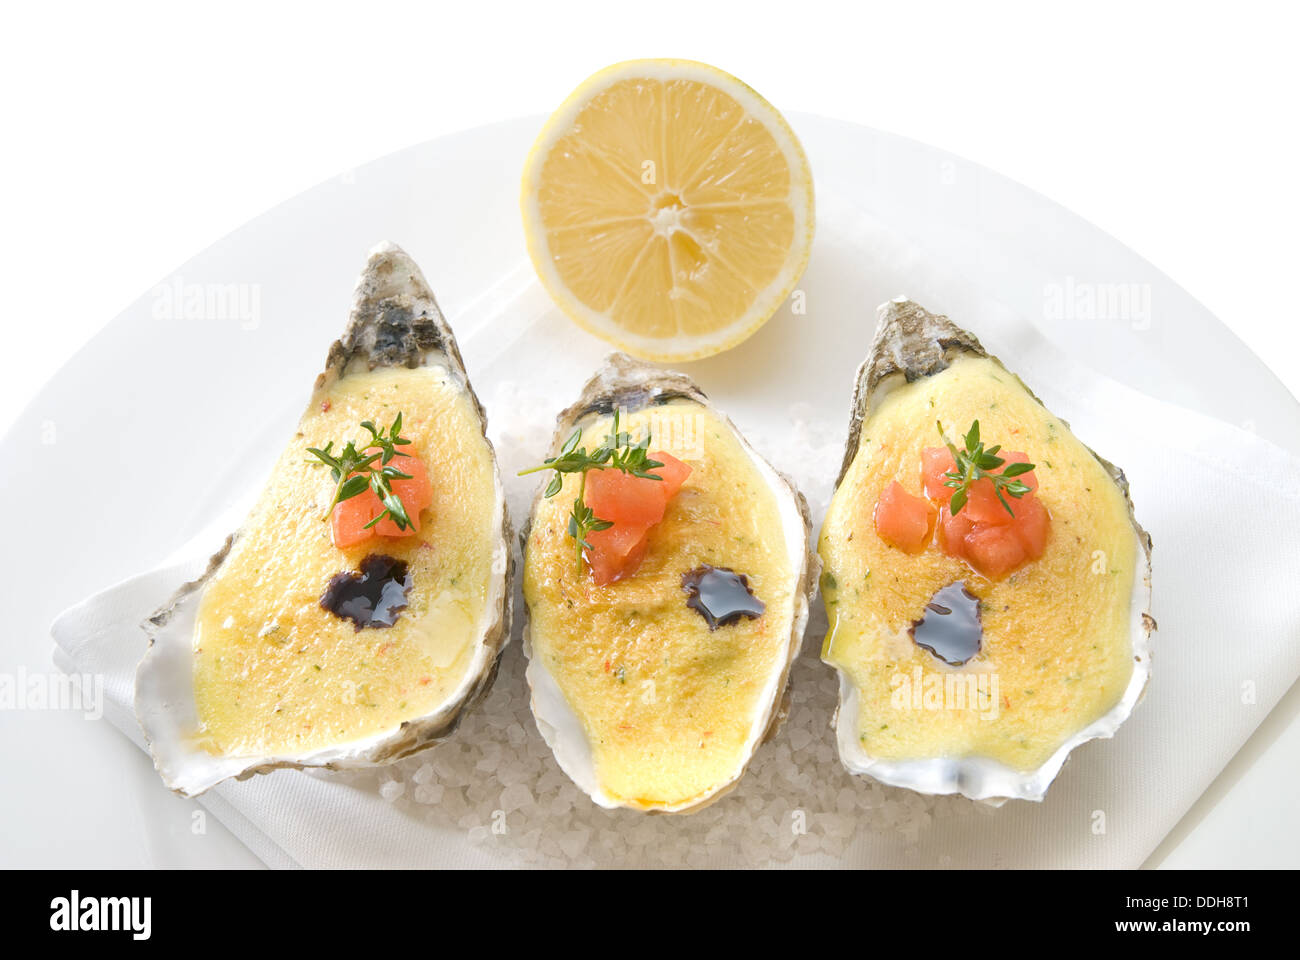 Austern mit Sauce und Zitrone Stockfotografie - Alamy